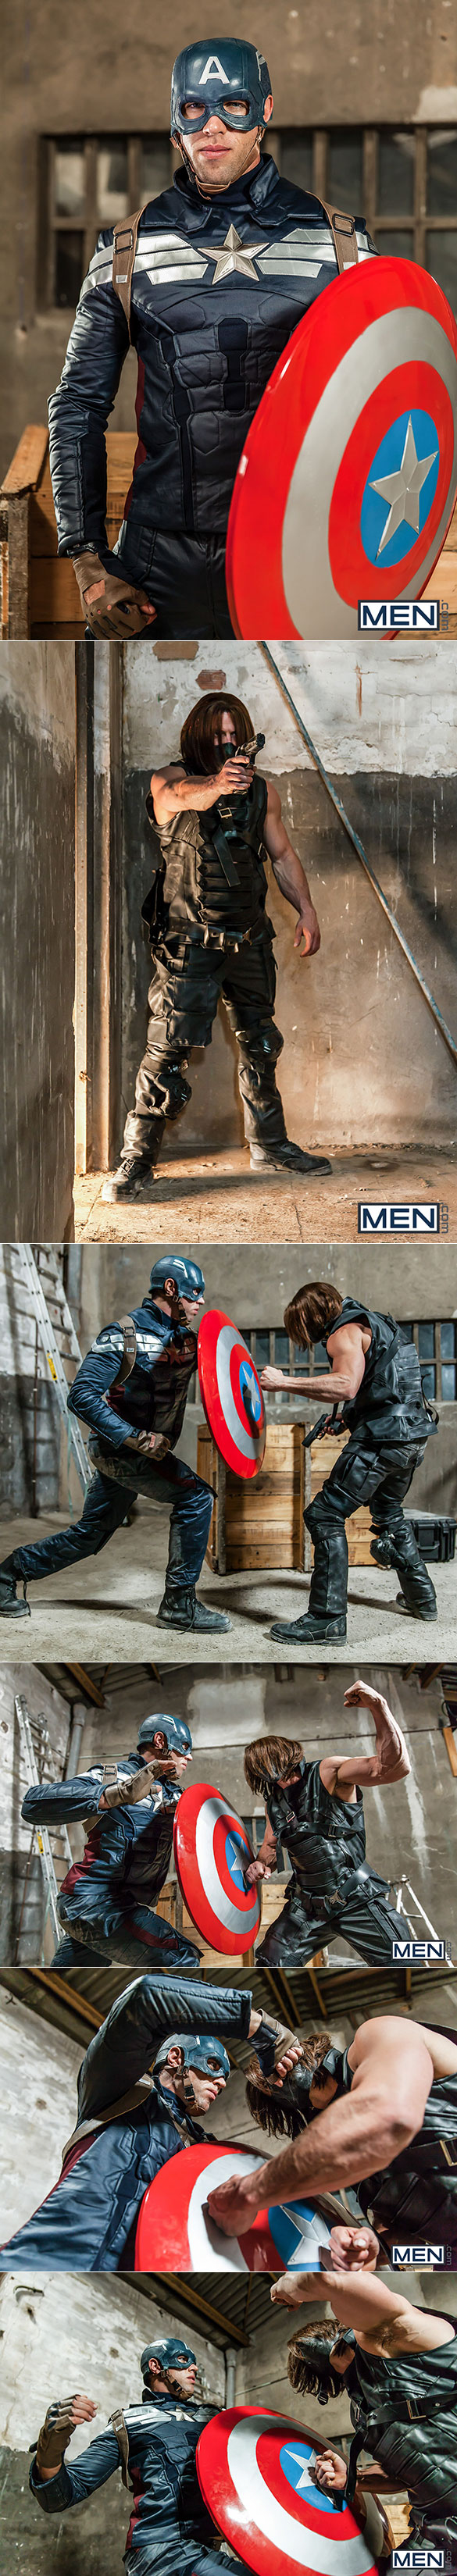 Men.com: Paddy O'Brian pounds Alex Mecum in "Captain America: A Gay XXX Parody, Part 3"